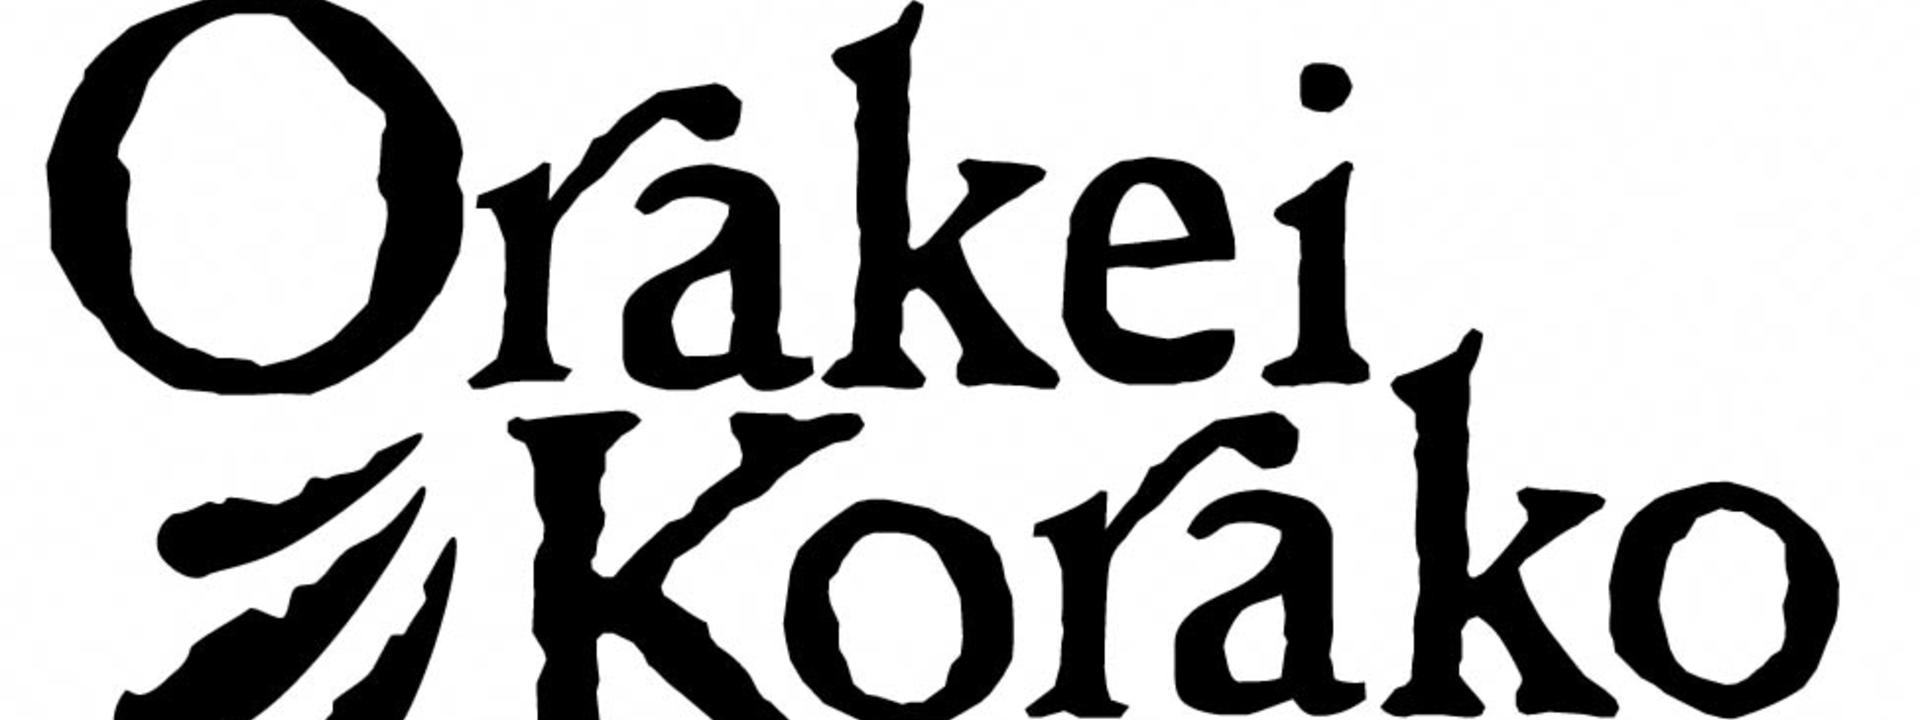 Oraki Korako Logo Black on White